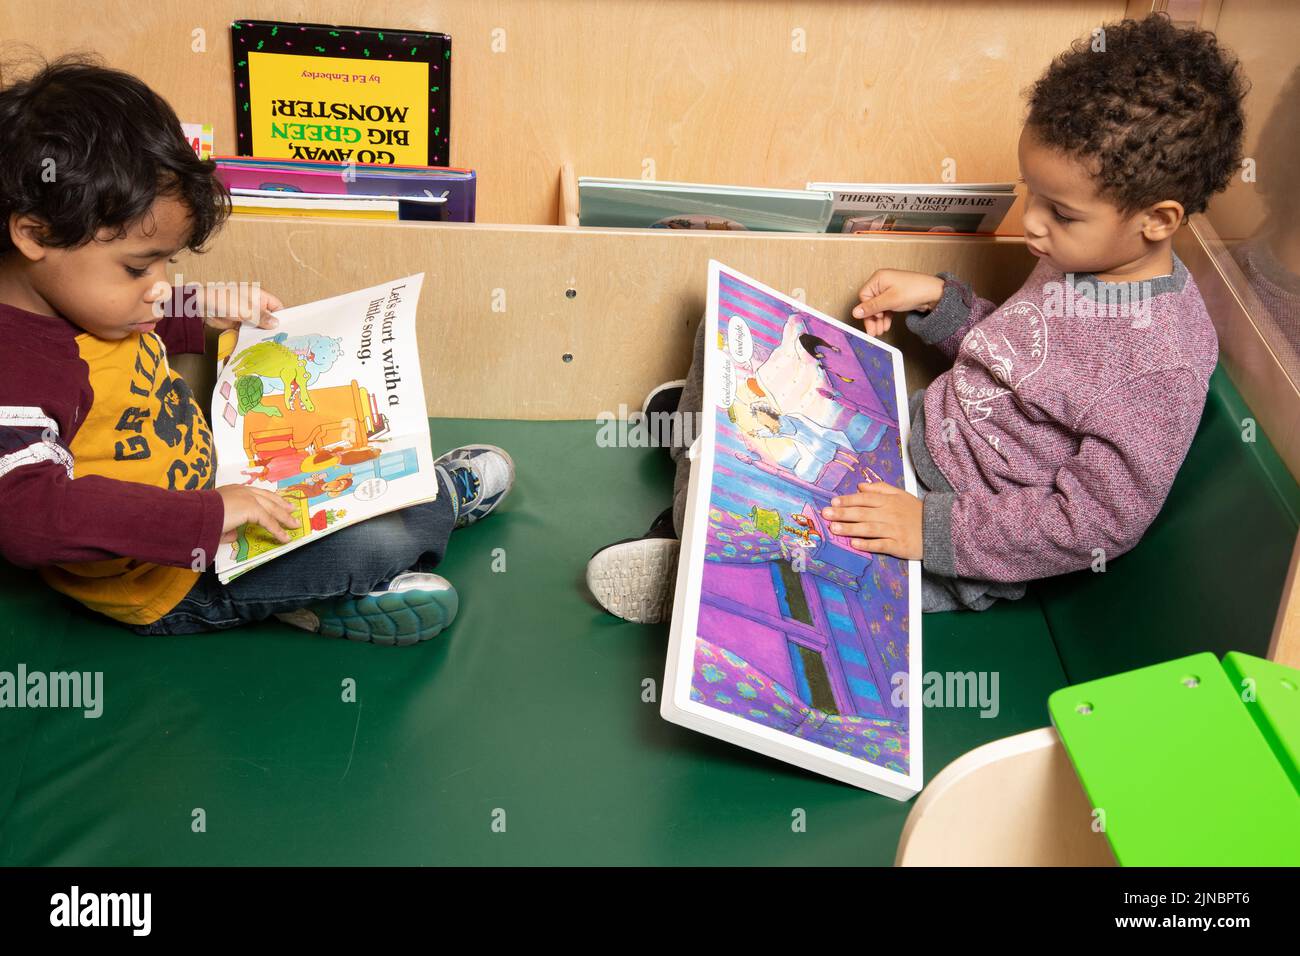 Educación Cuidado Infantil Preescolar Niños de 4 años Dos niños mirando libros ilustrados Foto de stock